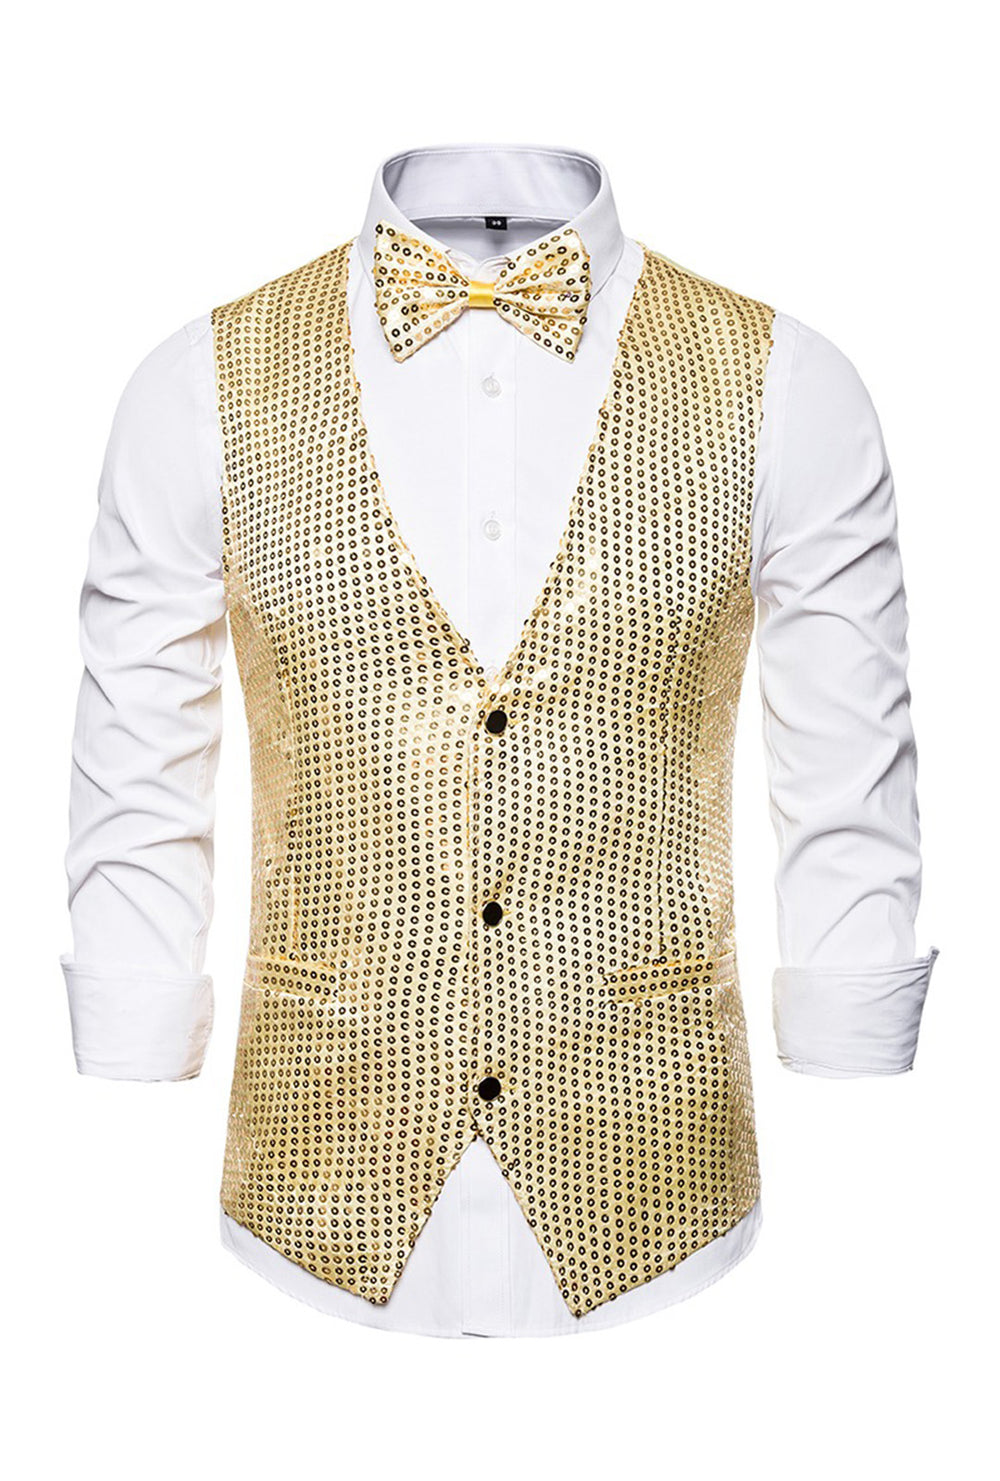 Gold Shiny Sequin Waistcoat Perth | Hurly-Burly